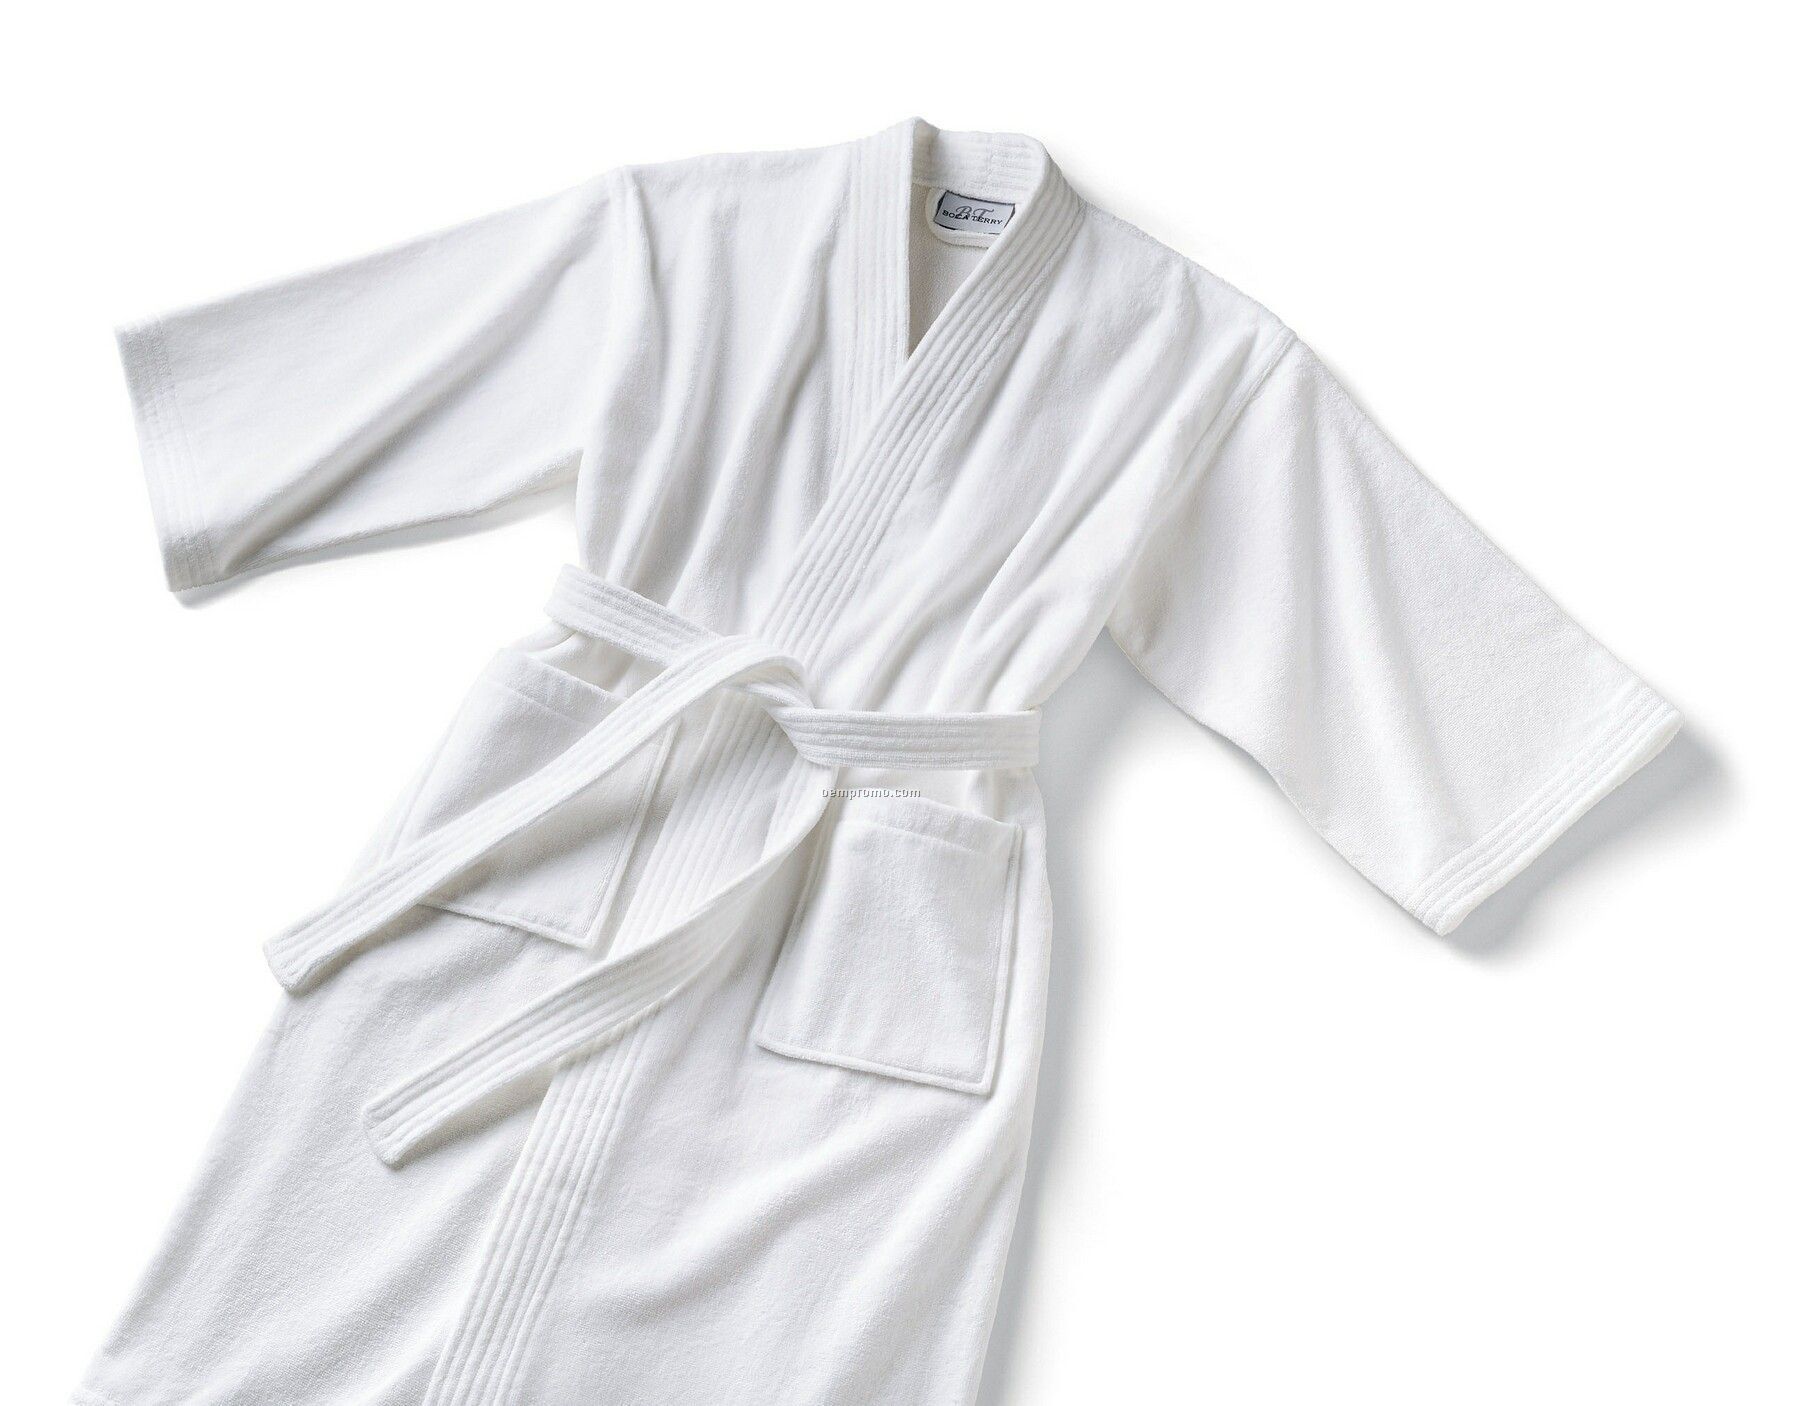 Basic Kimono Robe - 14 Oz. Terry